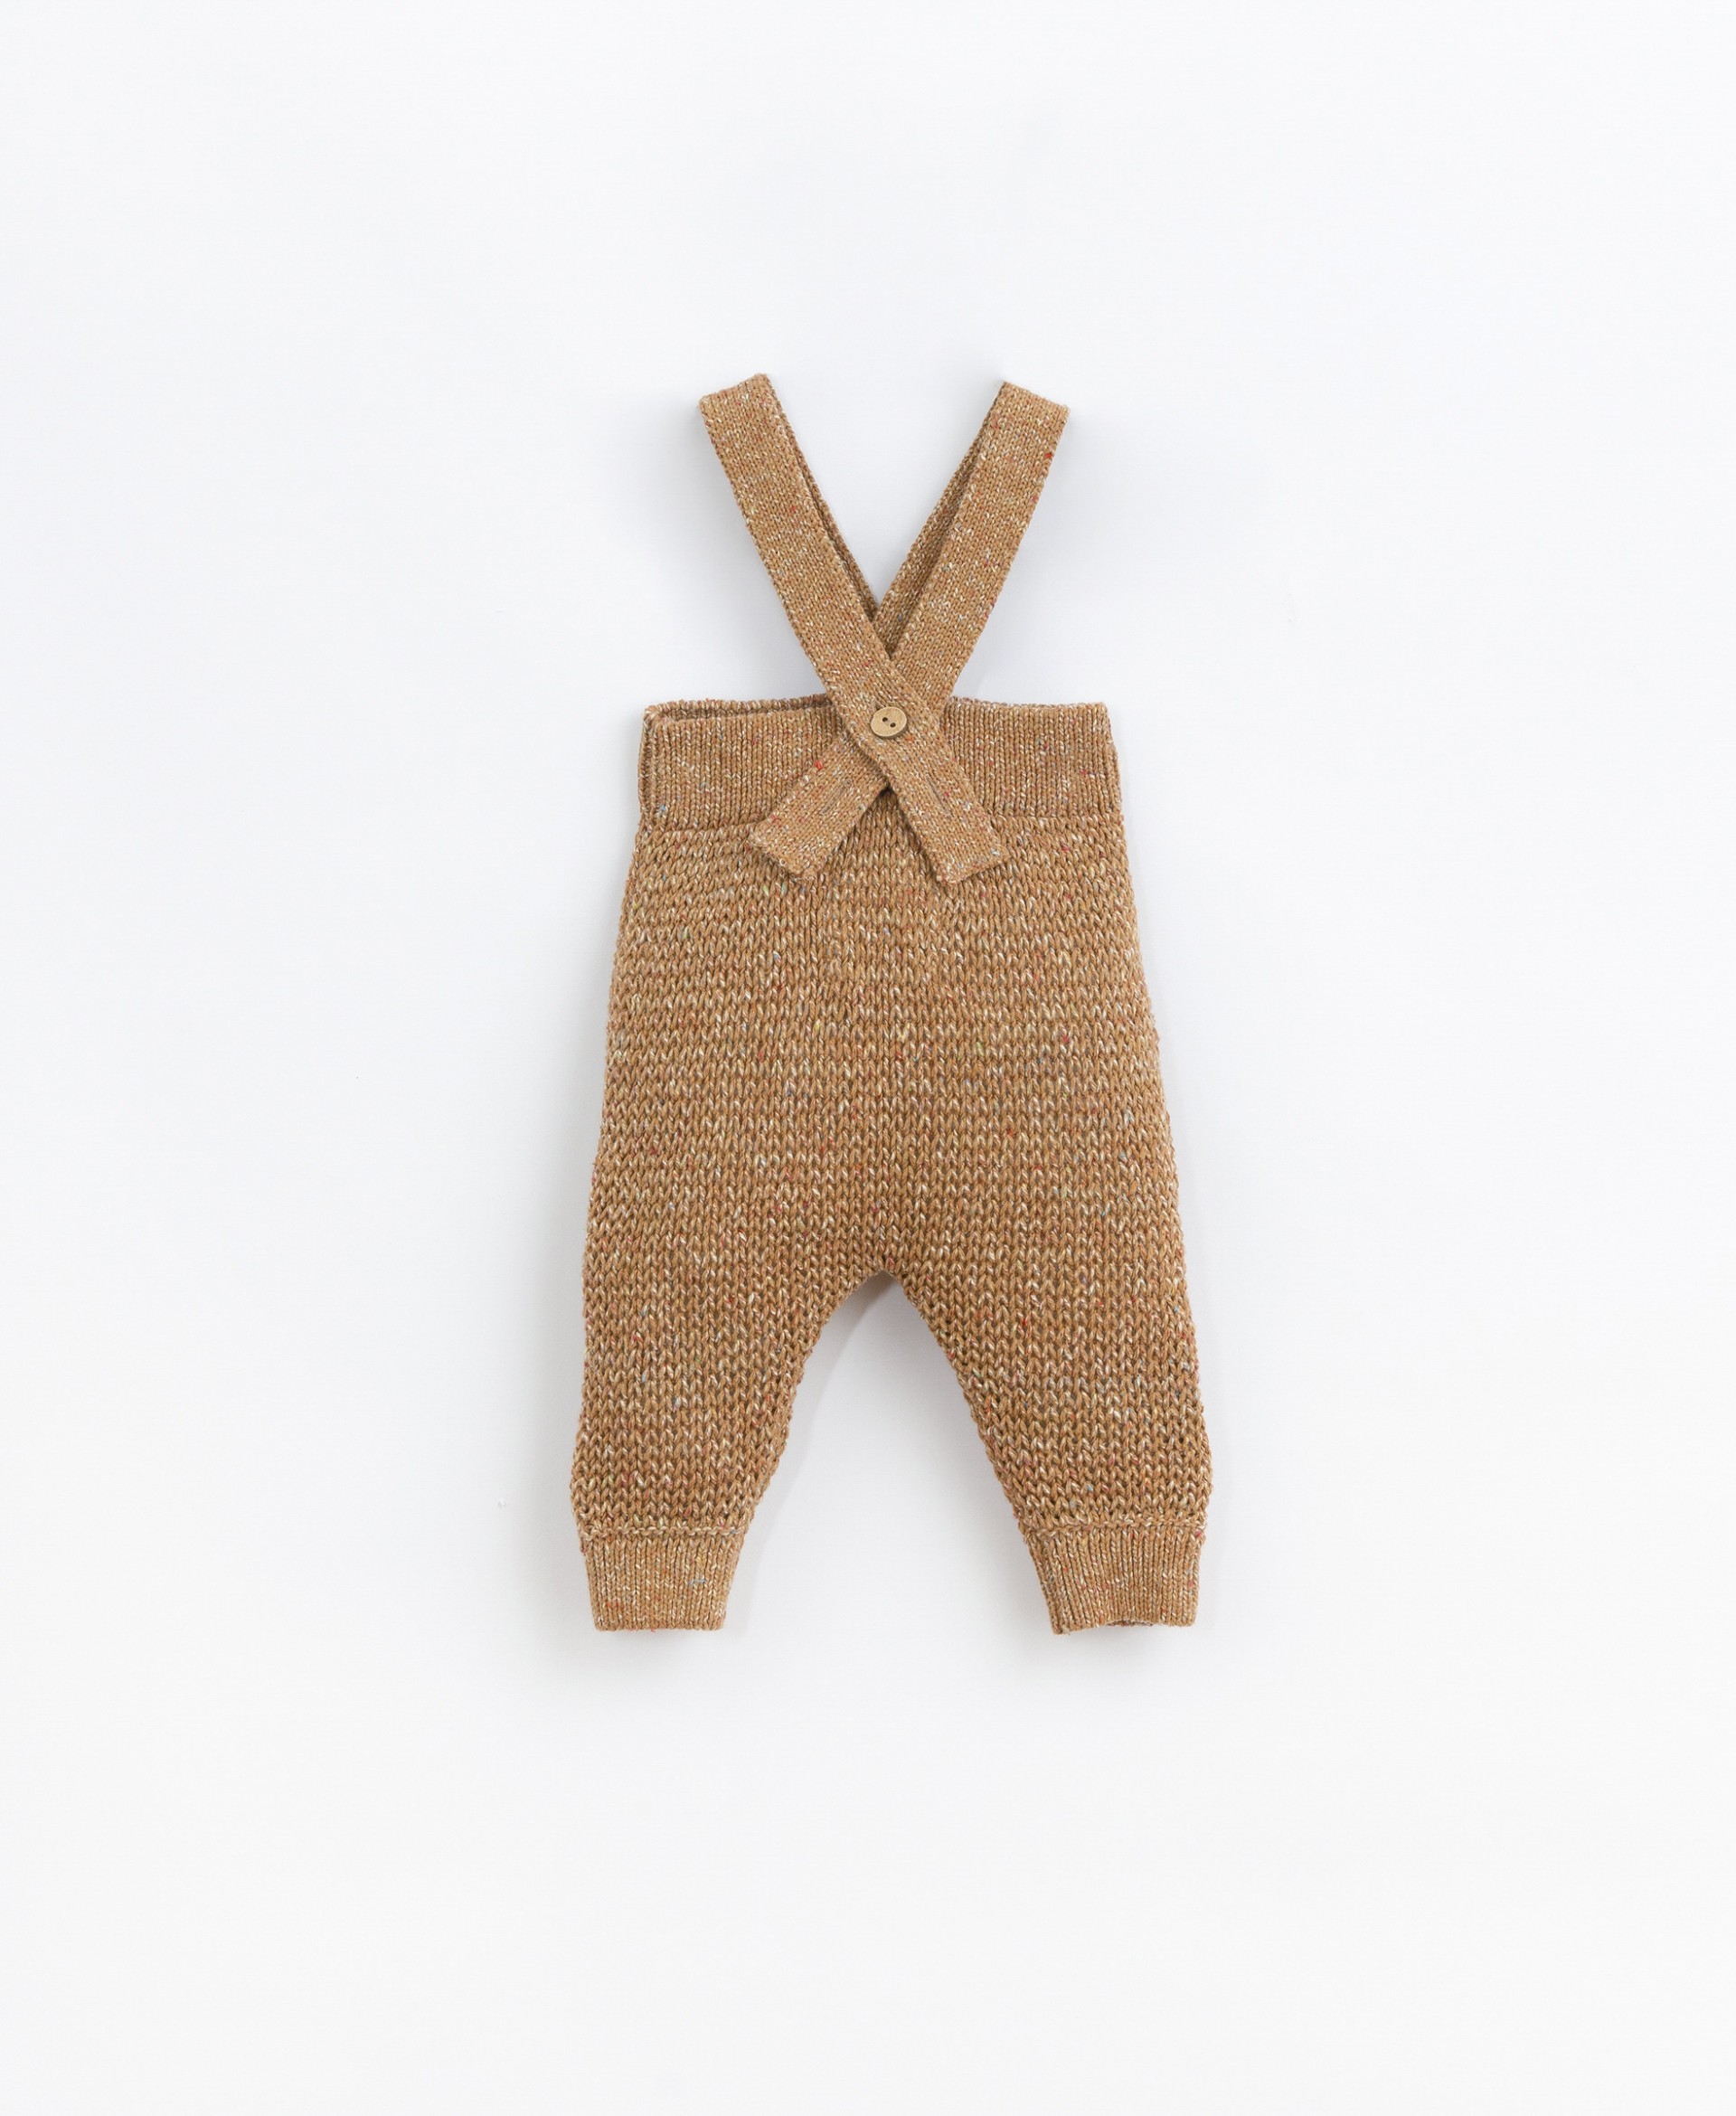 Macacão tricot com alças cruzadas | Basketry